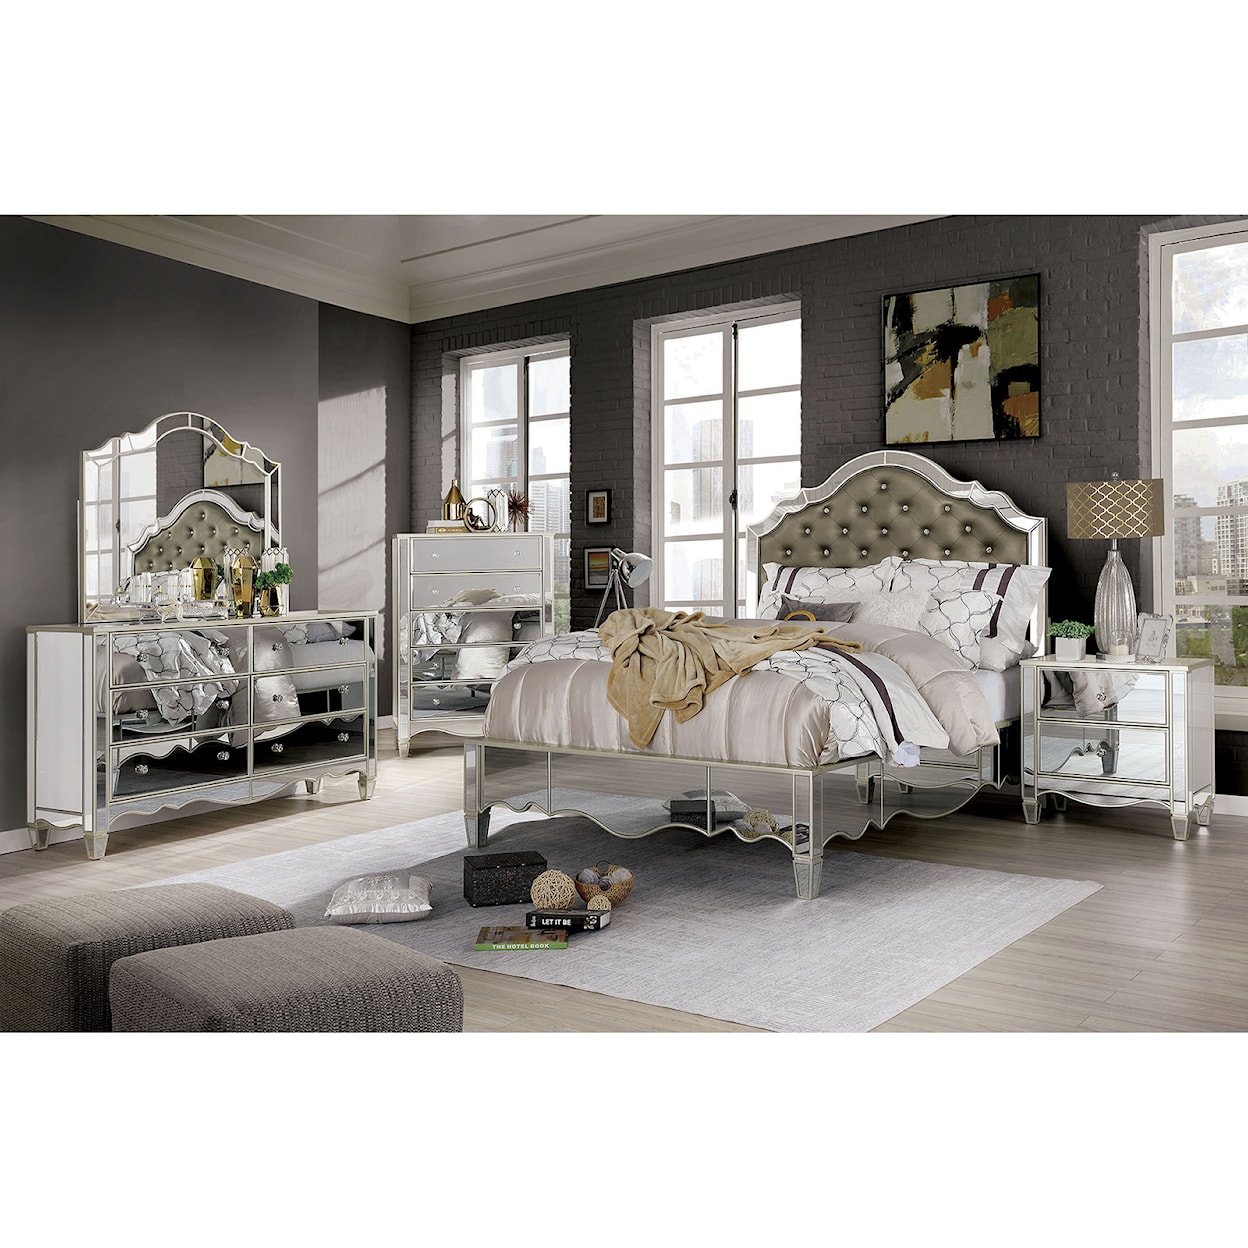 Furniture of America Eliora 4-Piece Queen Bedroom Set